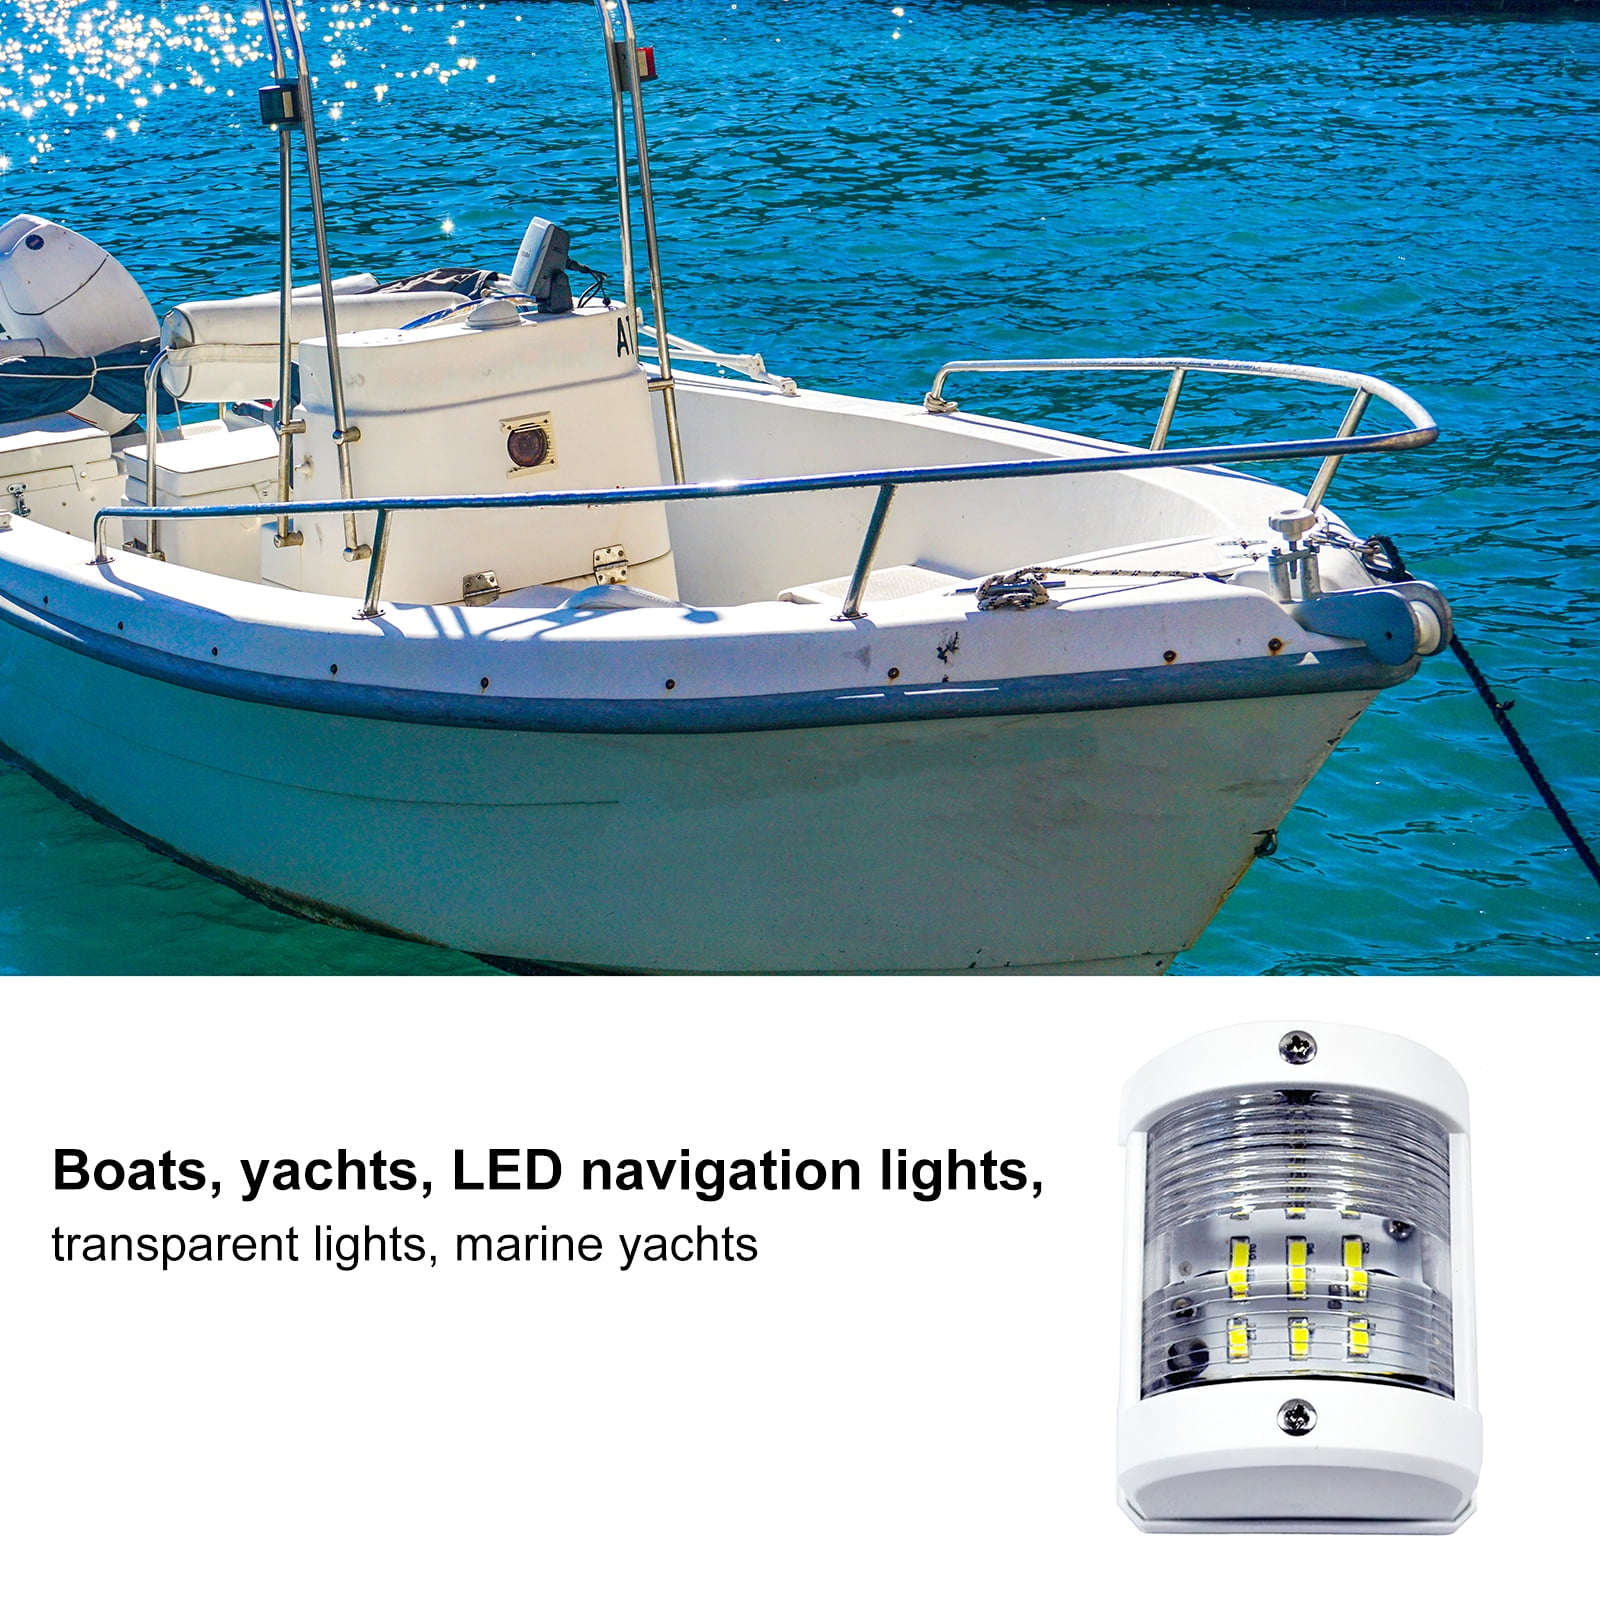 12V LED White Stern Navigation Light Side Mounted for Marine Boat Yacht 42.5LM 